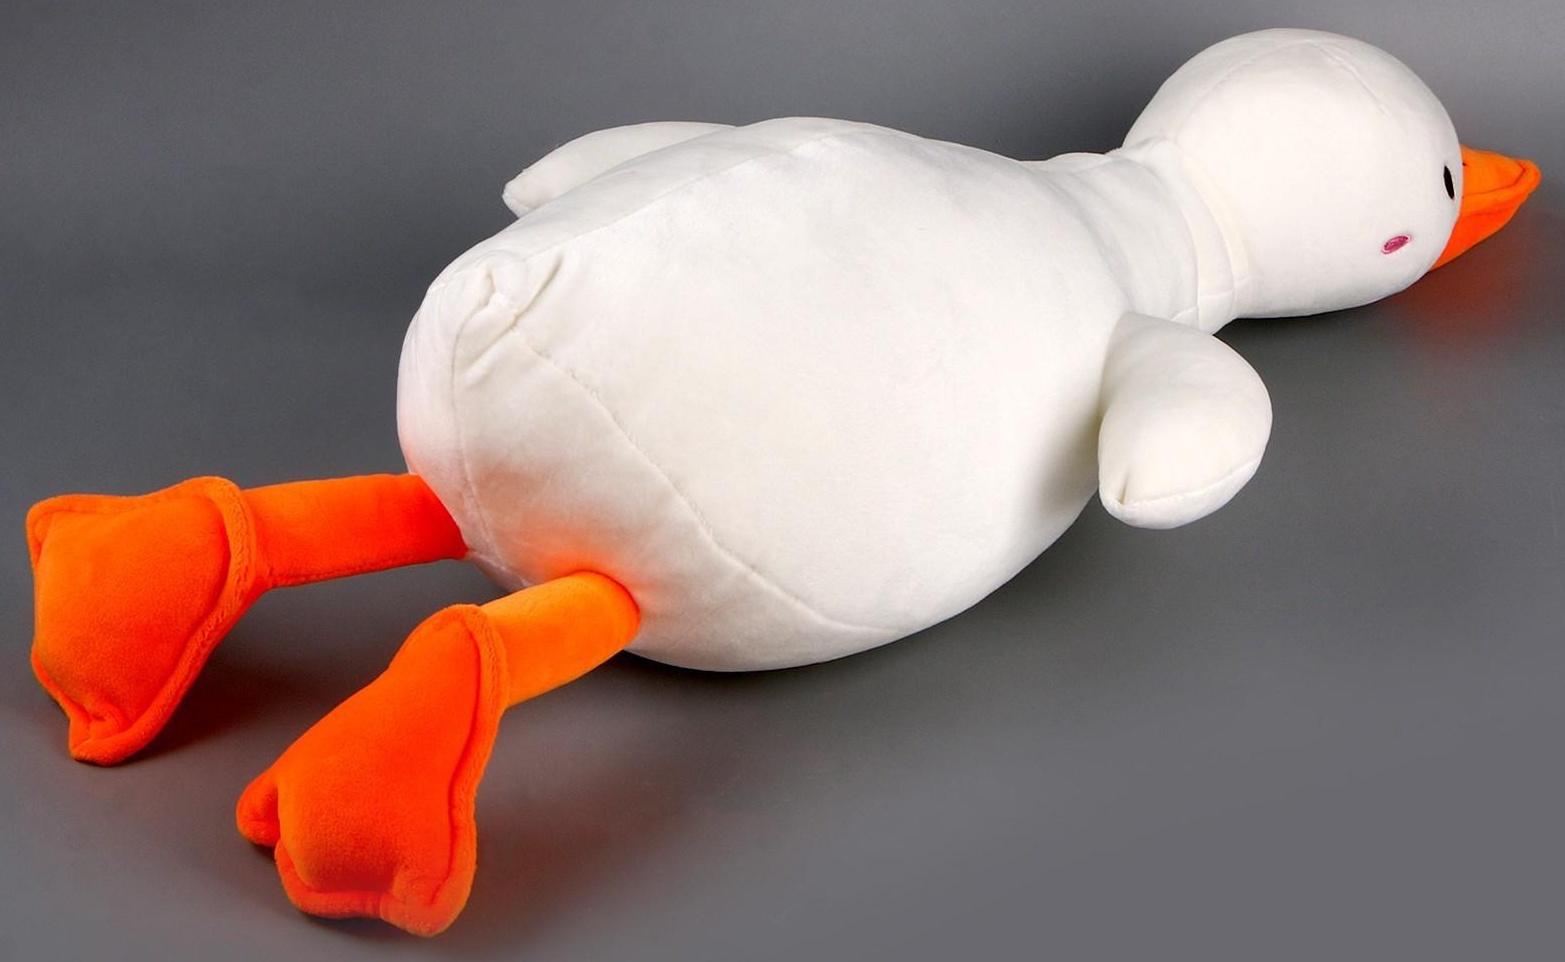 Мягкая игрушка-подушка «Утка», 60 см, цвета МИКС